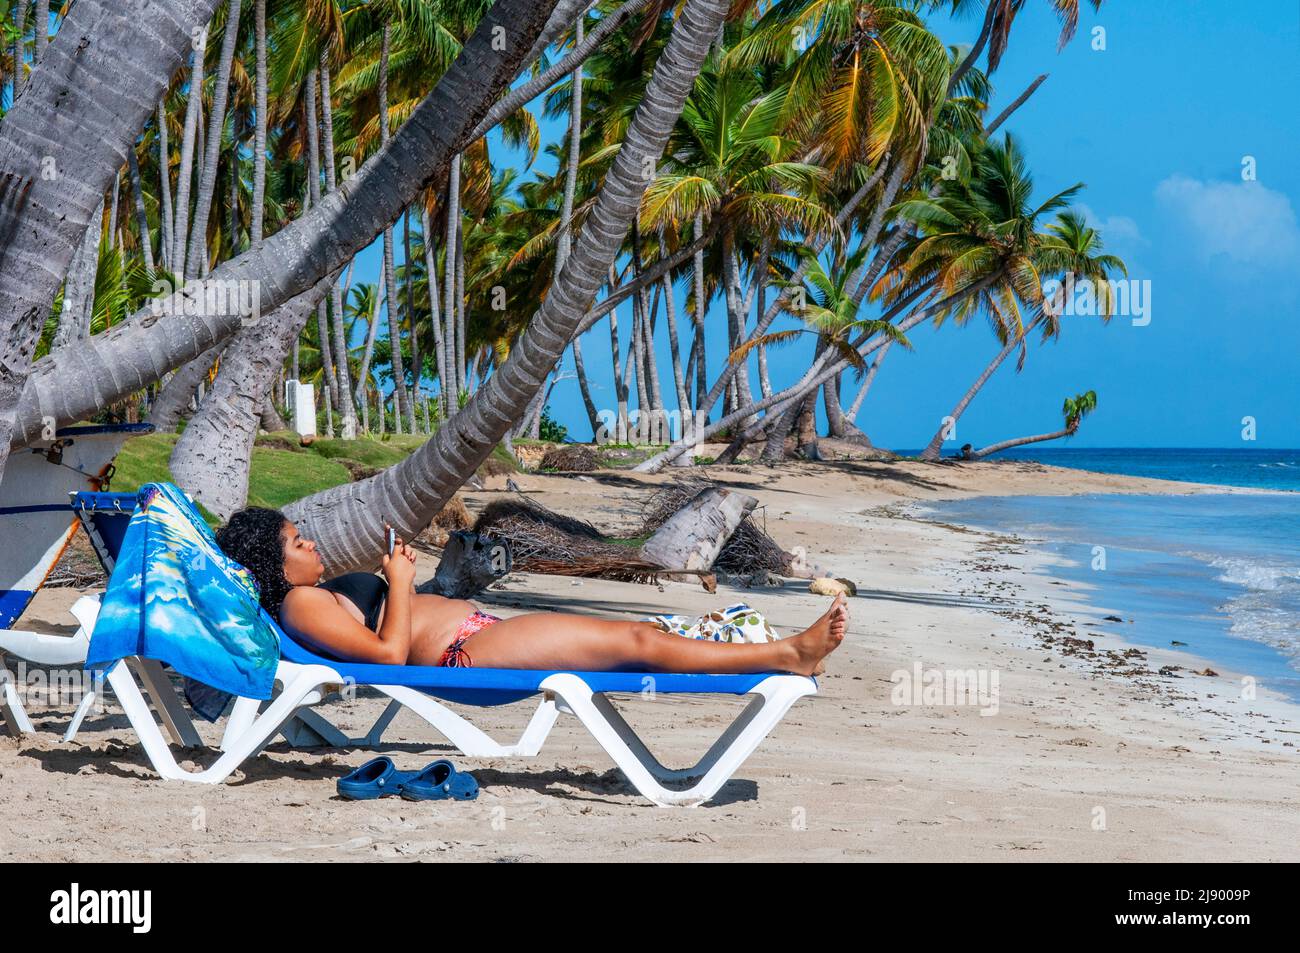 Girl relaxing on the beach in Playa bonita beach on the Samana peninsula in Dominican Republic near the Las Terrenas town.   Resultados de traducción Stock Photo